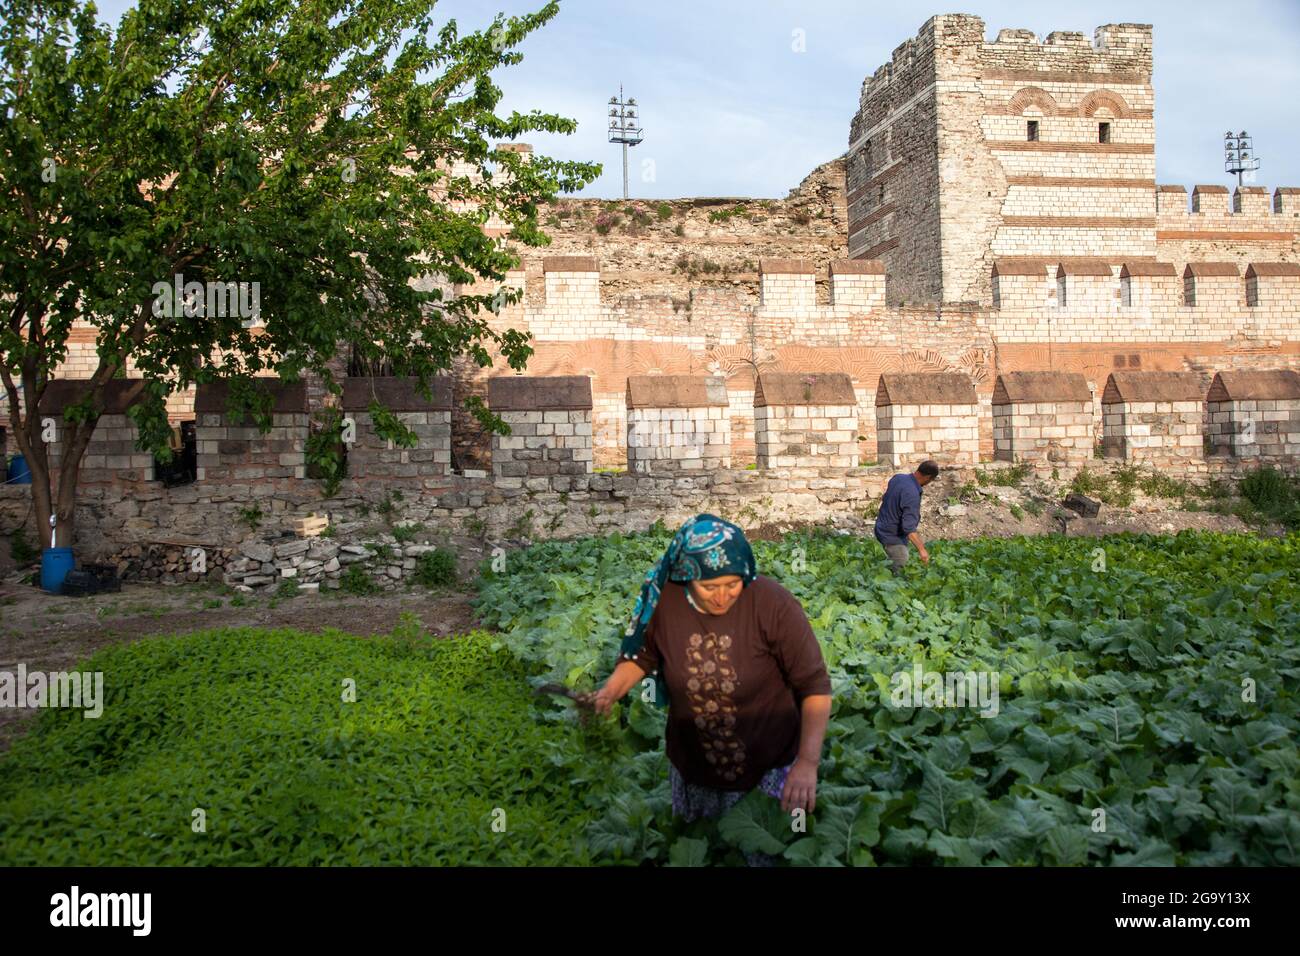 Fatih,Istanbul-Türkei - 05-20-2017:Blick auf die historischen byzantinischen Mauern und den Gemüsegarten Stockfoto